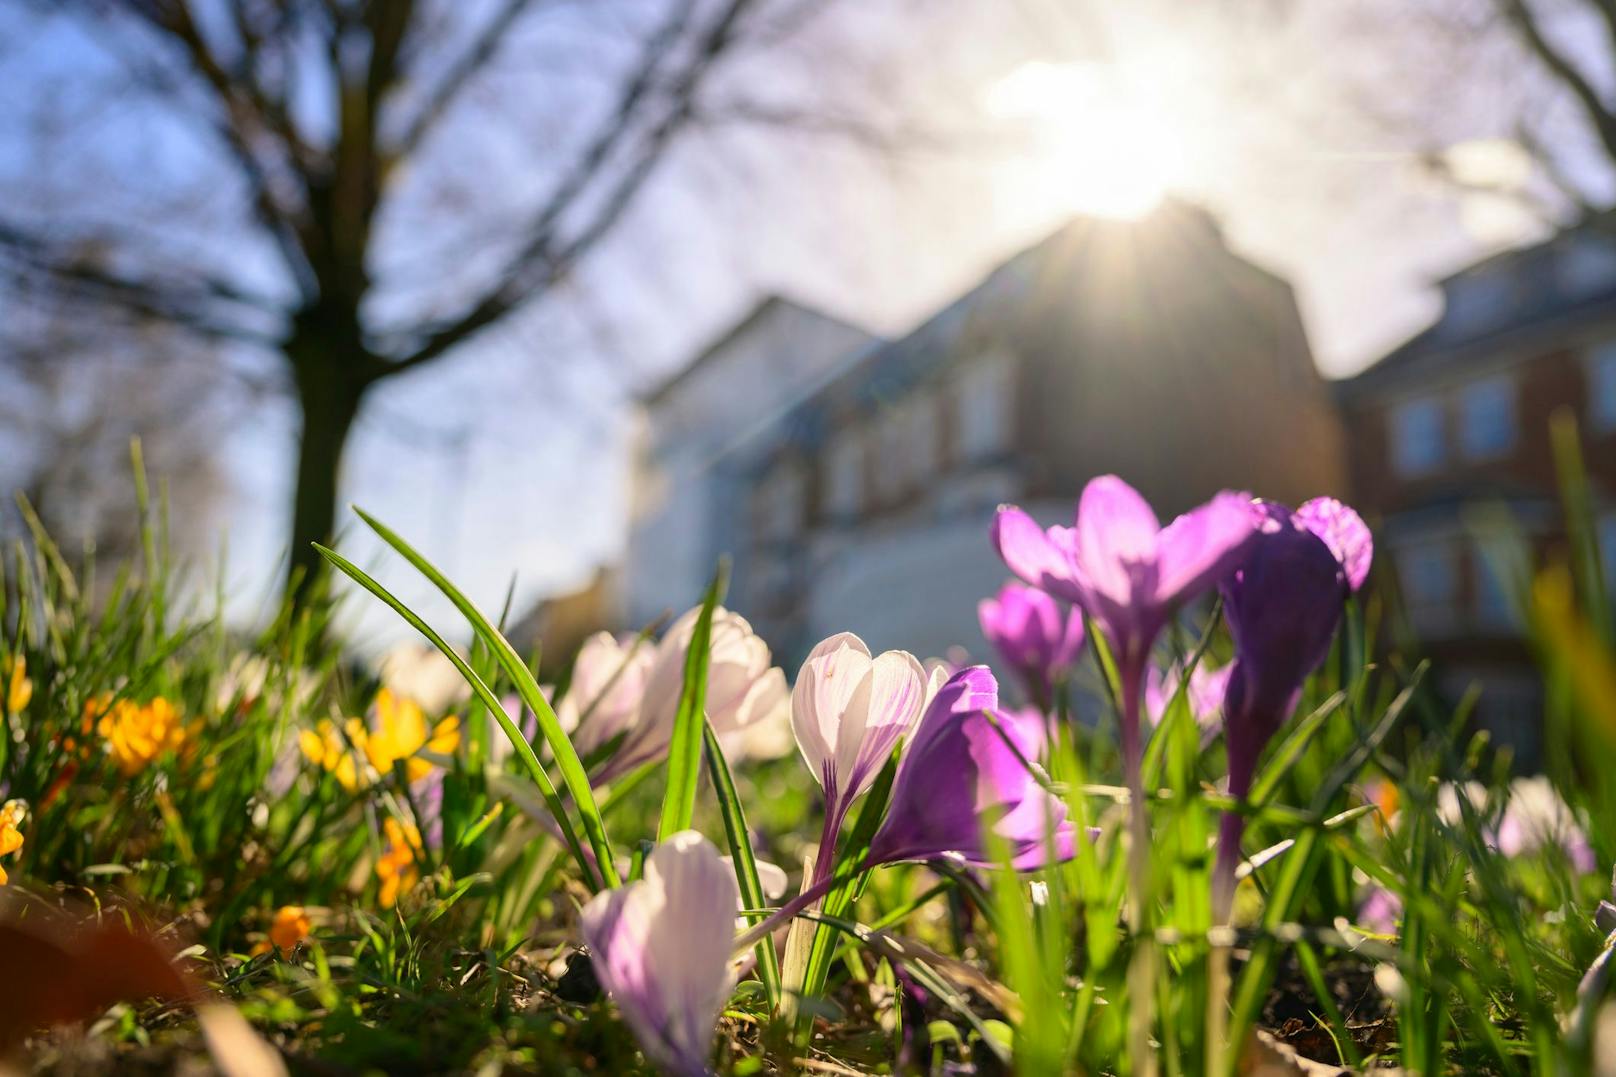 Frühlingserwachen in Österreich: die ersten Krokusse sind schon Mitte Februar aufgeblüht. Symbolbild